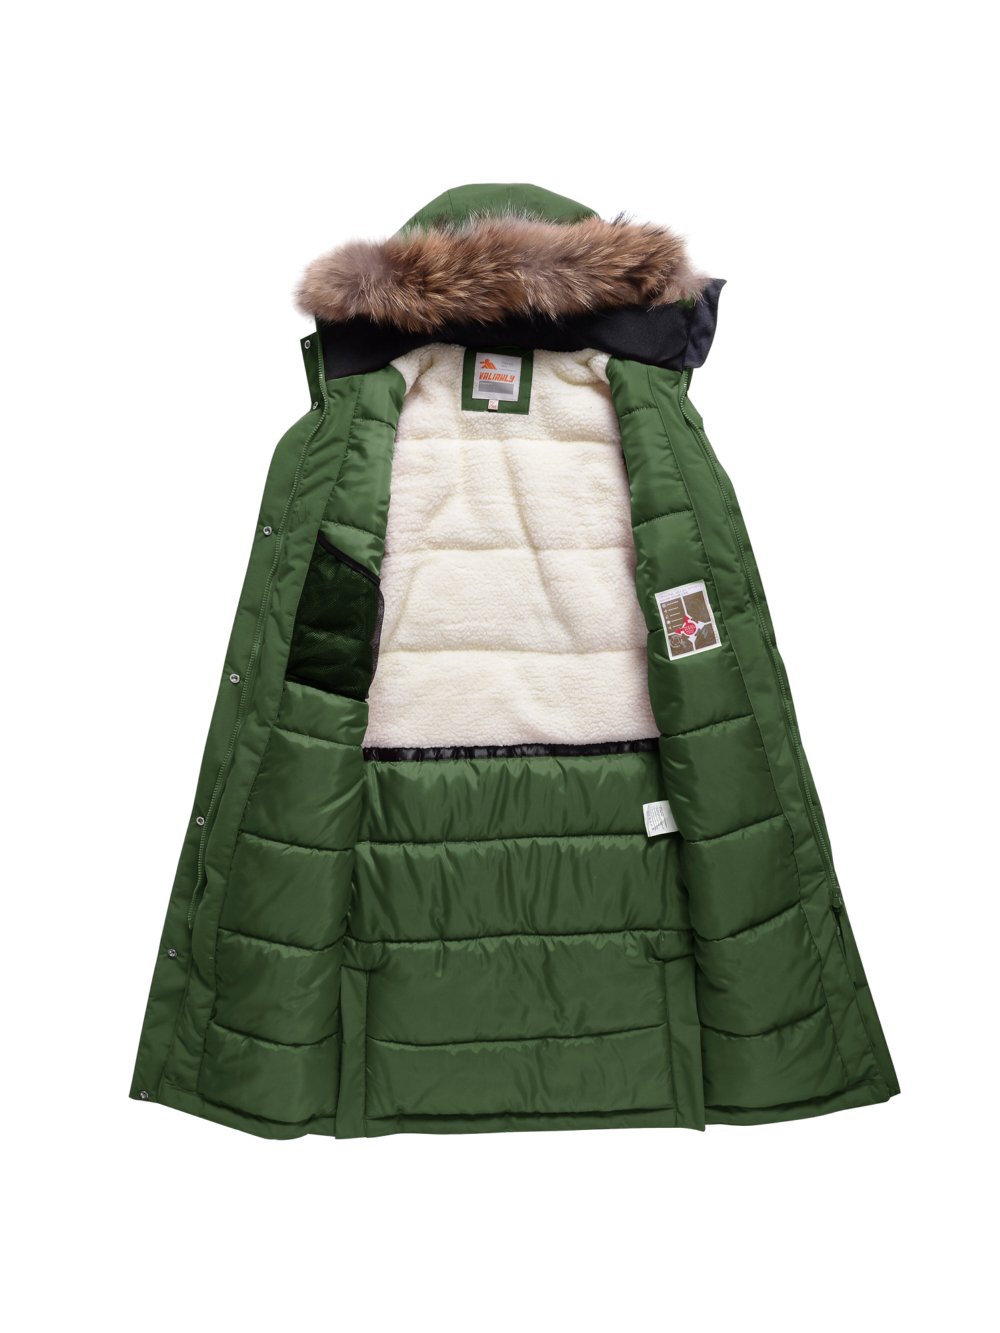 Купить куртку парку для девочки оптом от производителя недорого в Москве 9344TZ 1